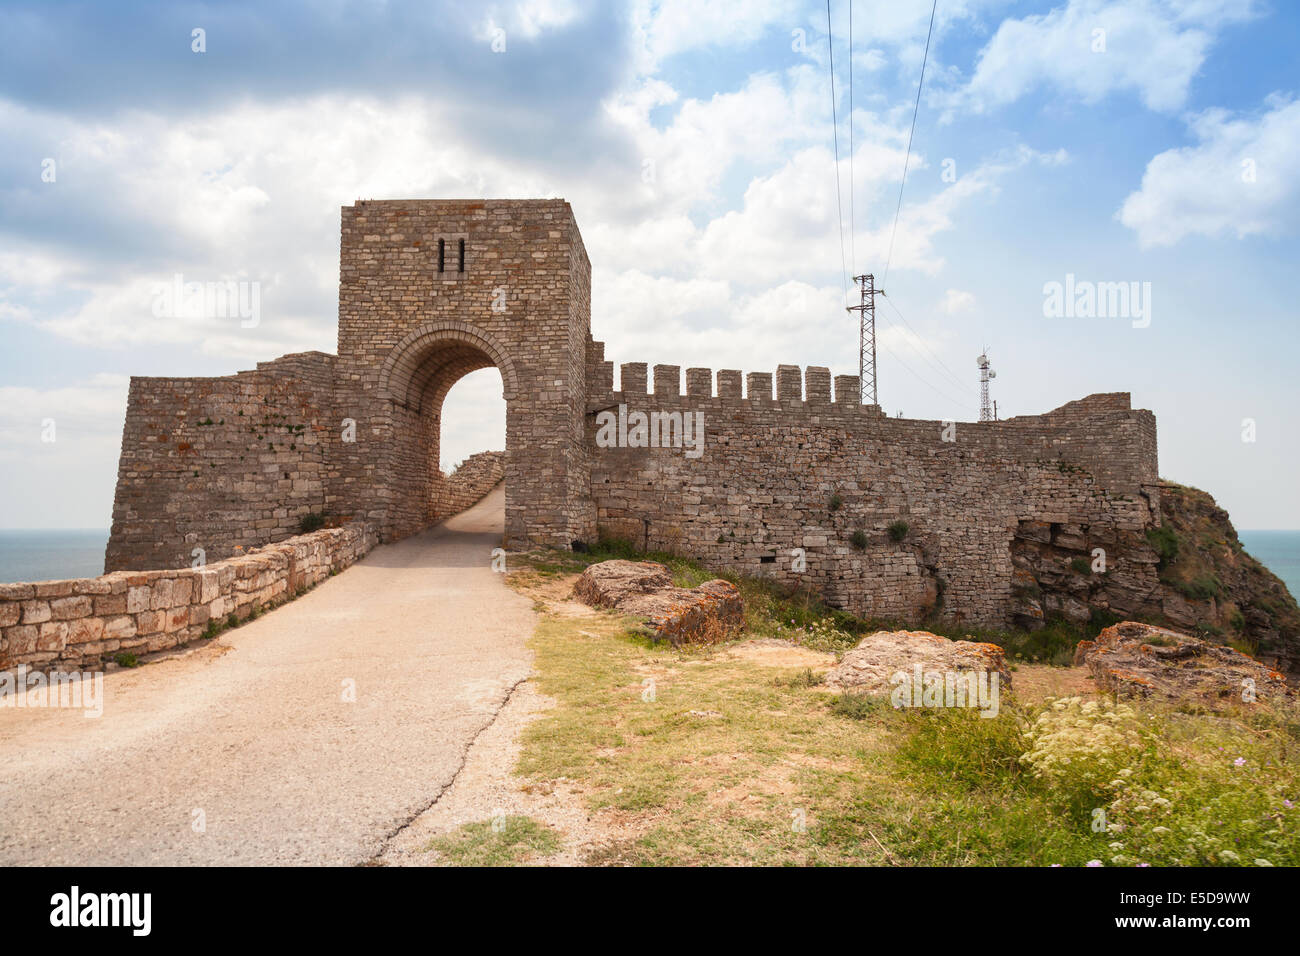 La forteresse médiévale de Kaliakra, côte bulgare de la Mer Noire Banque D'Images